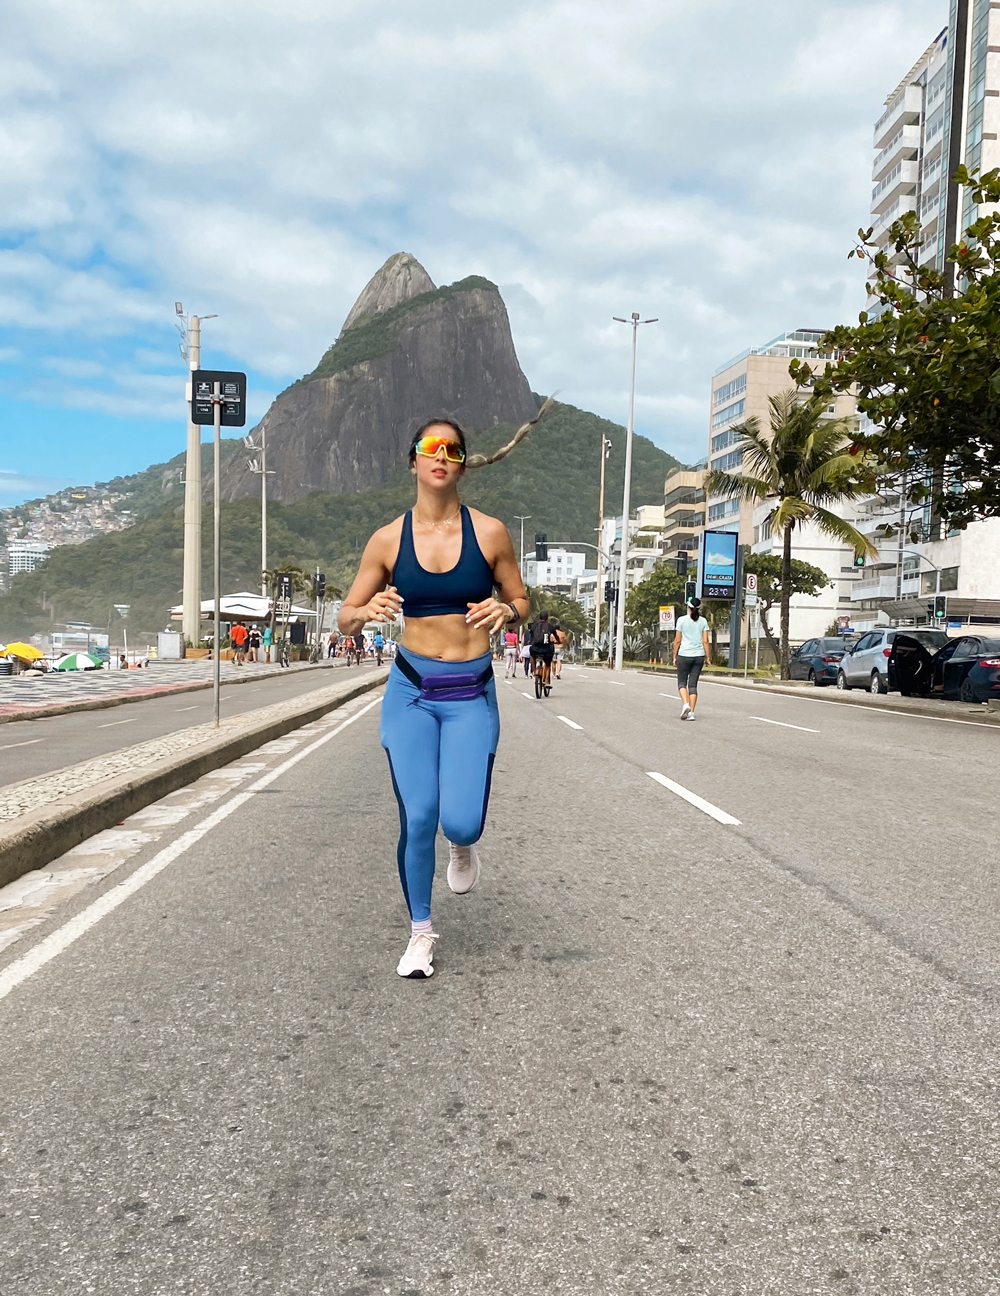 PAIXÃO PELO ESPORTE - Embora já levasse uma vida ativa, a professora de literatura Amanda Vieira começou a correr somente no ano passado. Participou de provas como a São Silvestre e agora treina para encarar o desafio da maratona. “Me tornei mais forte”, conta ela.